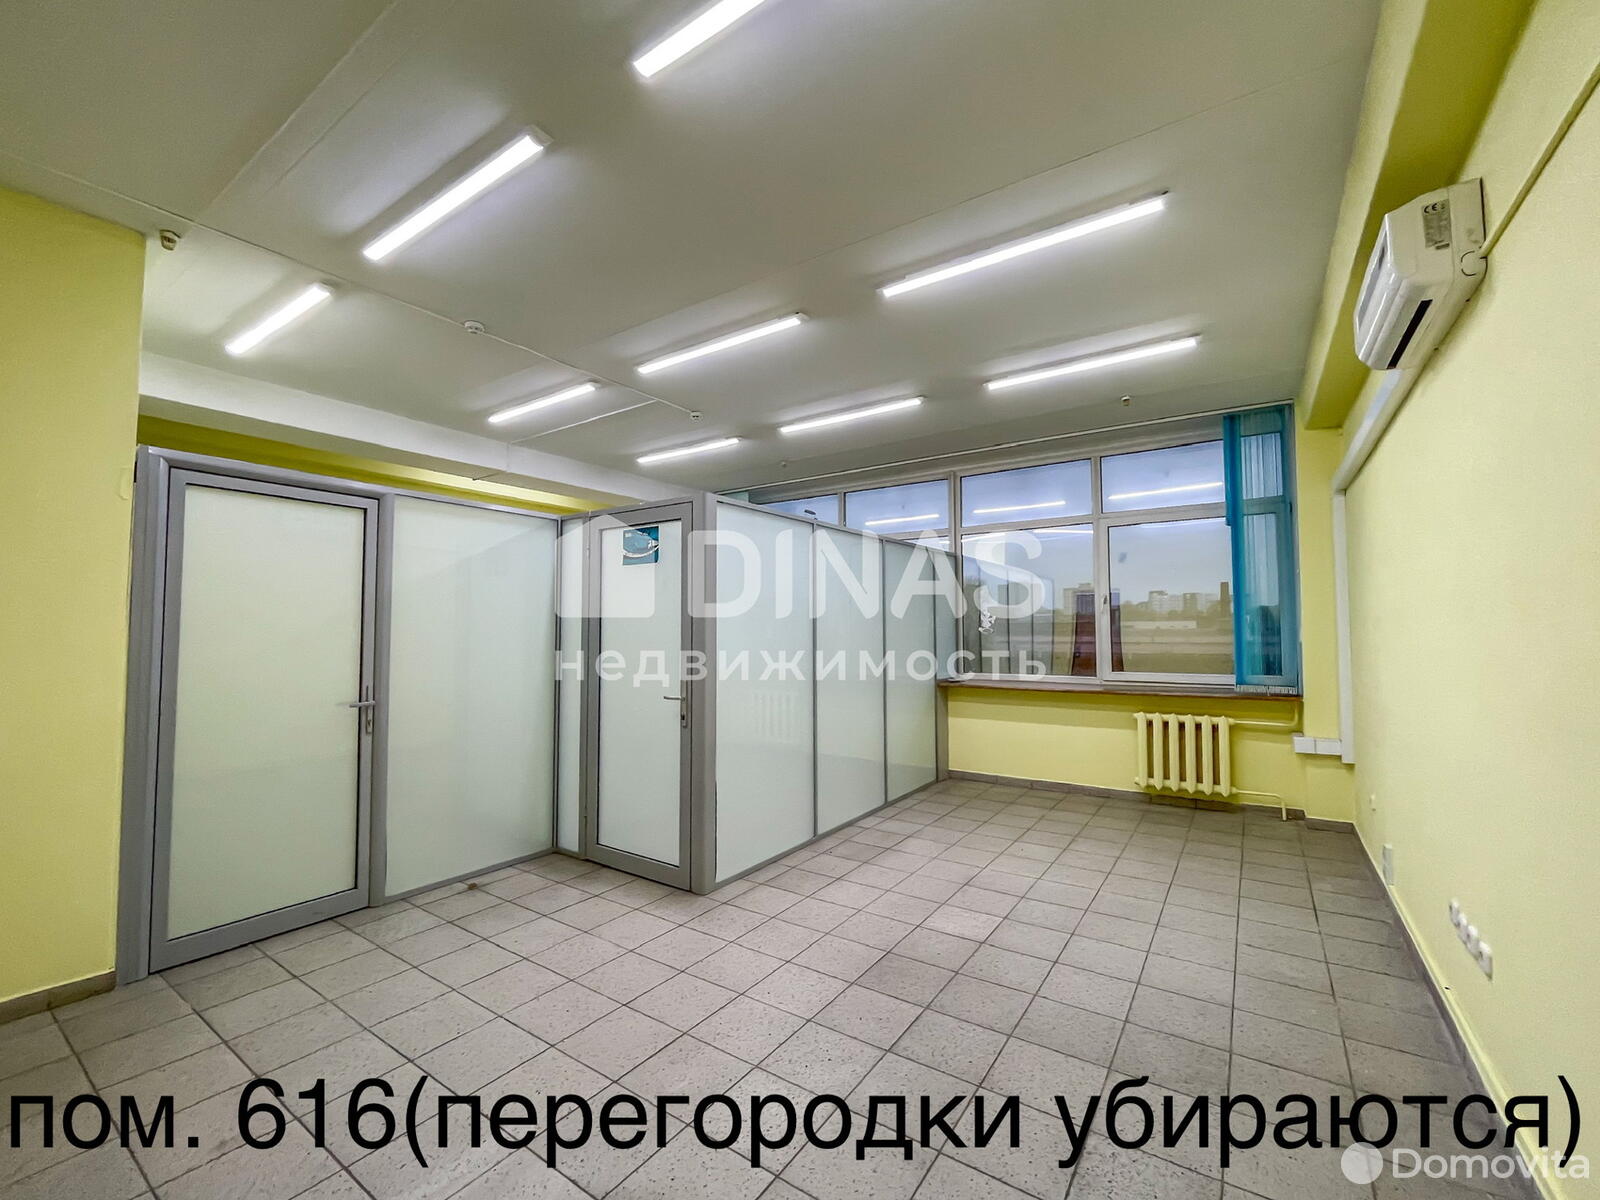 Аренда офиса на ул. Тимирязева, д. 65 в Минске, 296EUR, код 11178 - фото 1